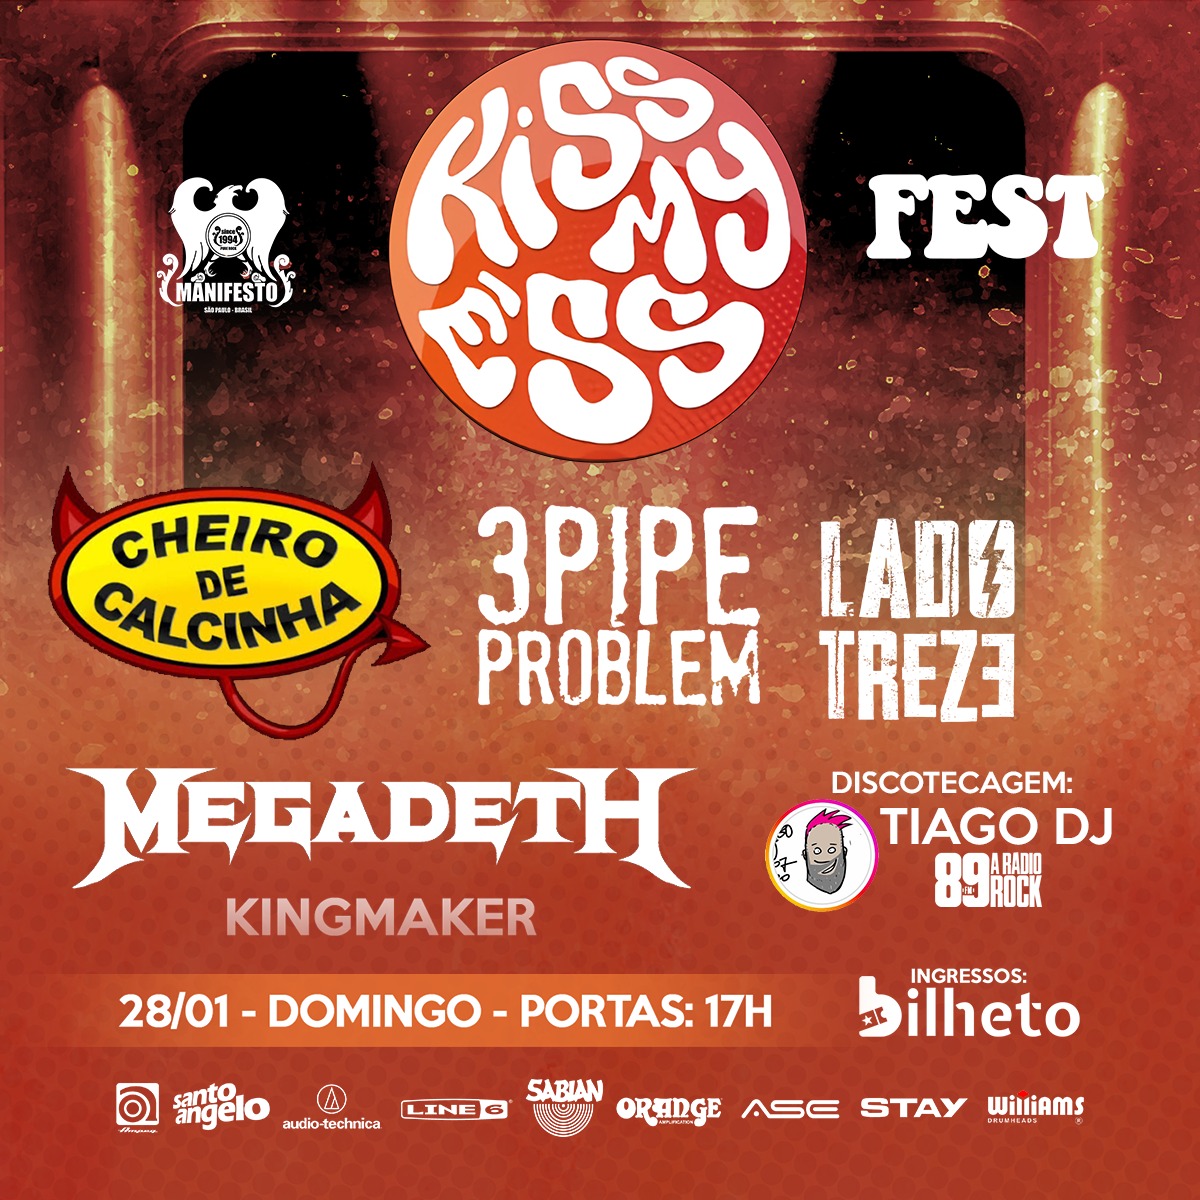 Domingo é dia de sonzeira no templo🔥

Festival Kiss my Ess

Megadeth @kingmaker_oficial - @3pipeproblemband - @cheirodecalcinharock

DISCOTECAGEM - TIAGO DJ DA @aradiorock